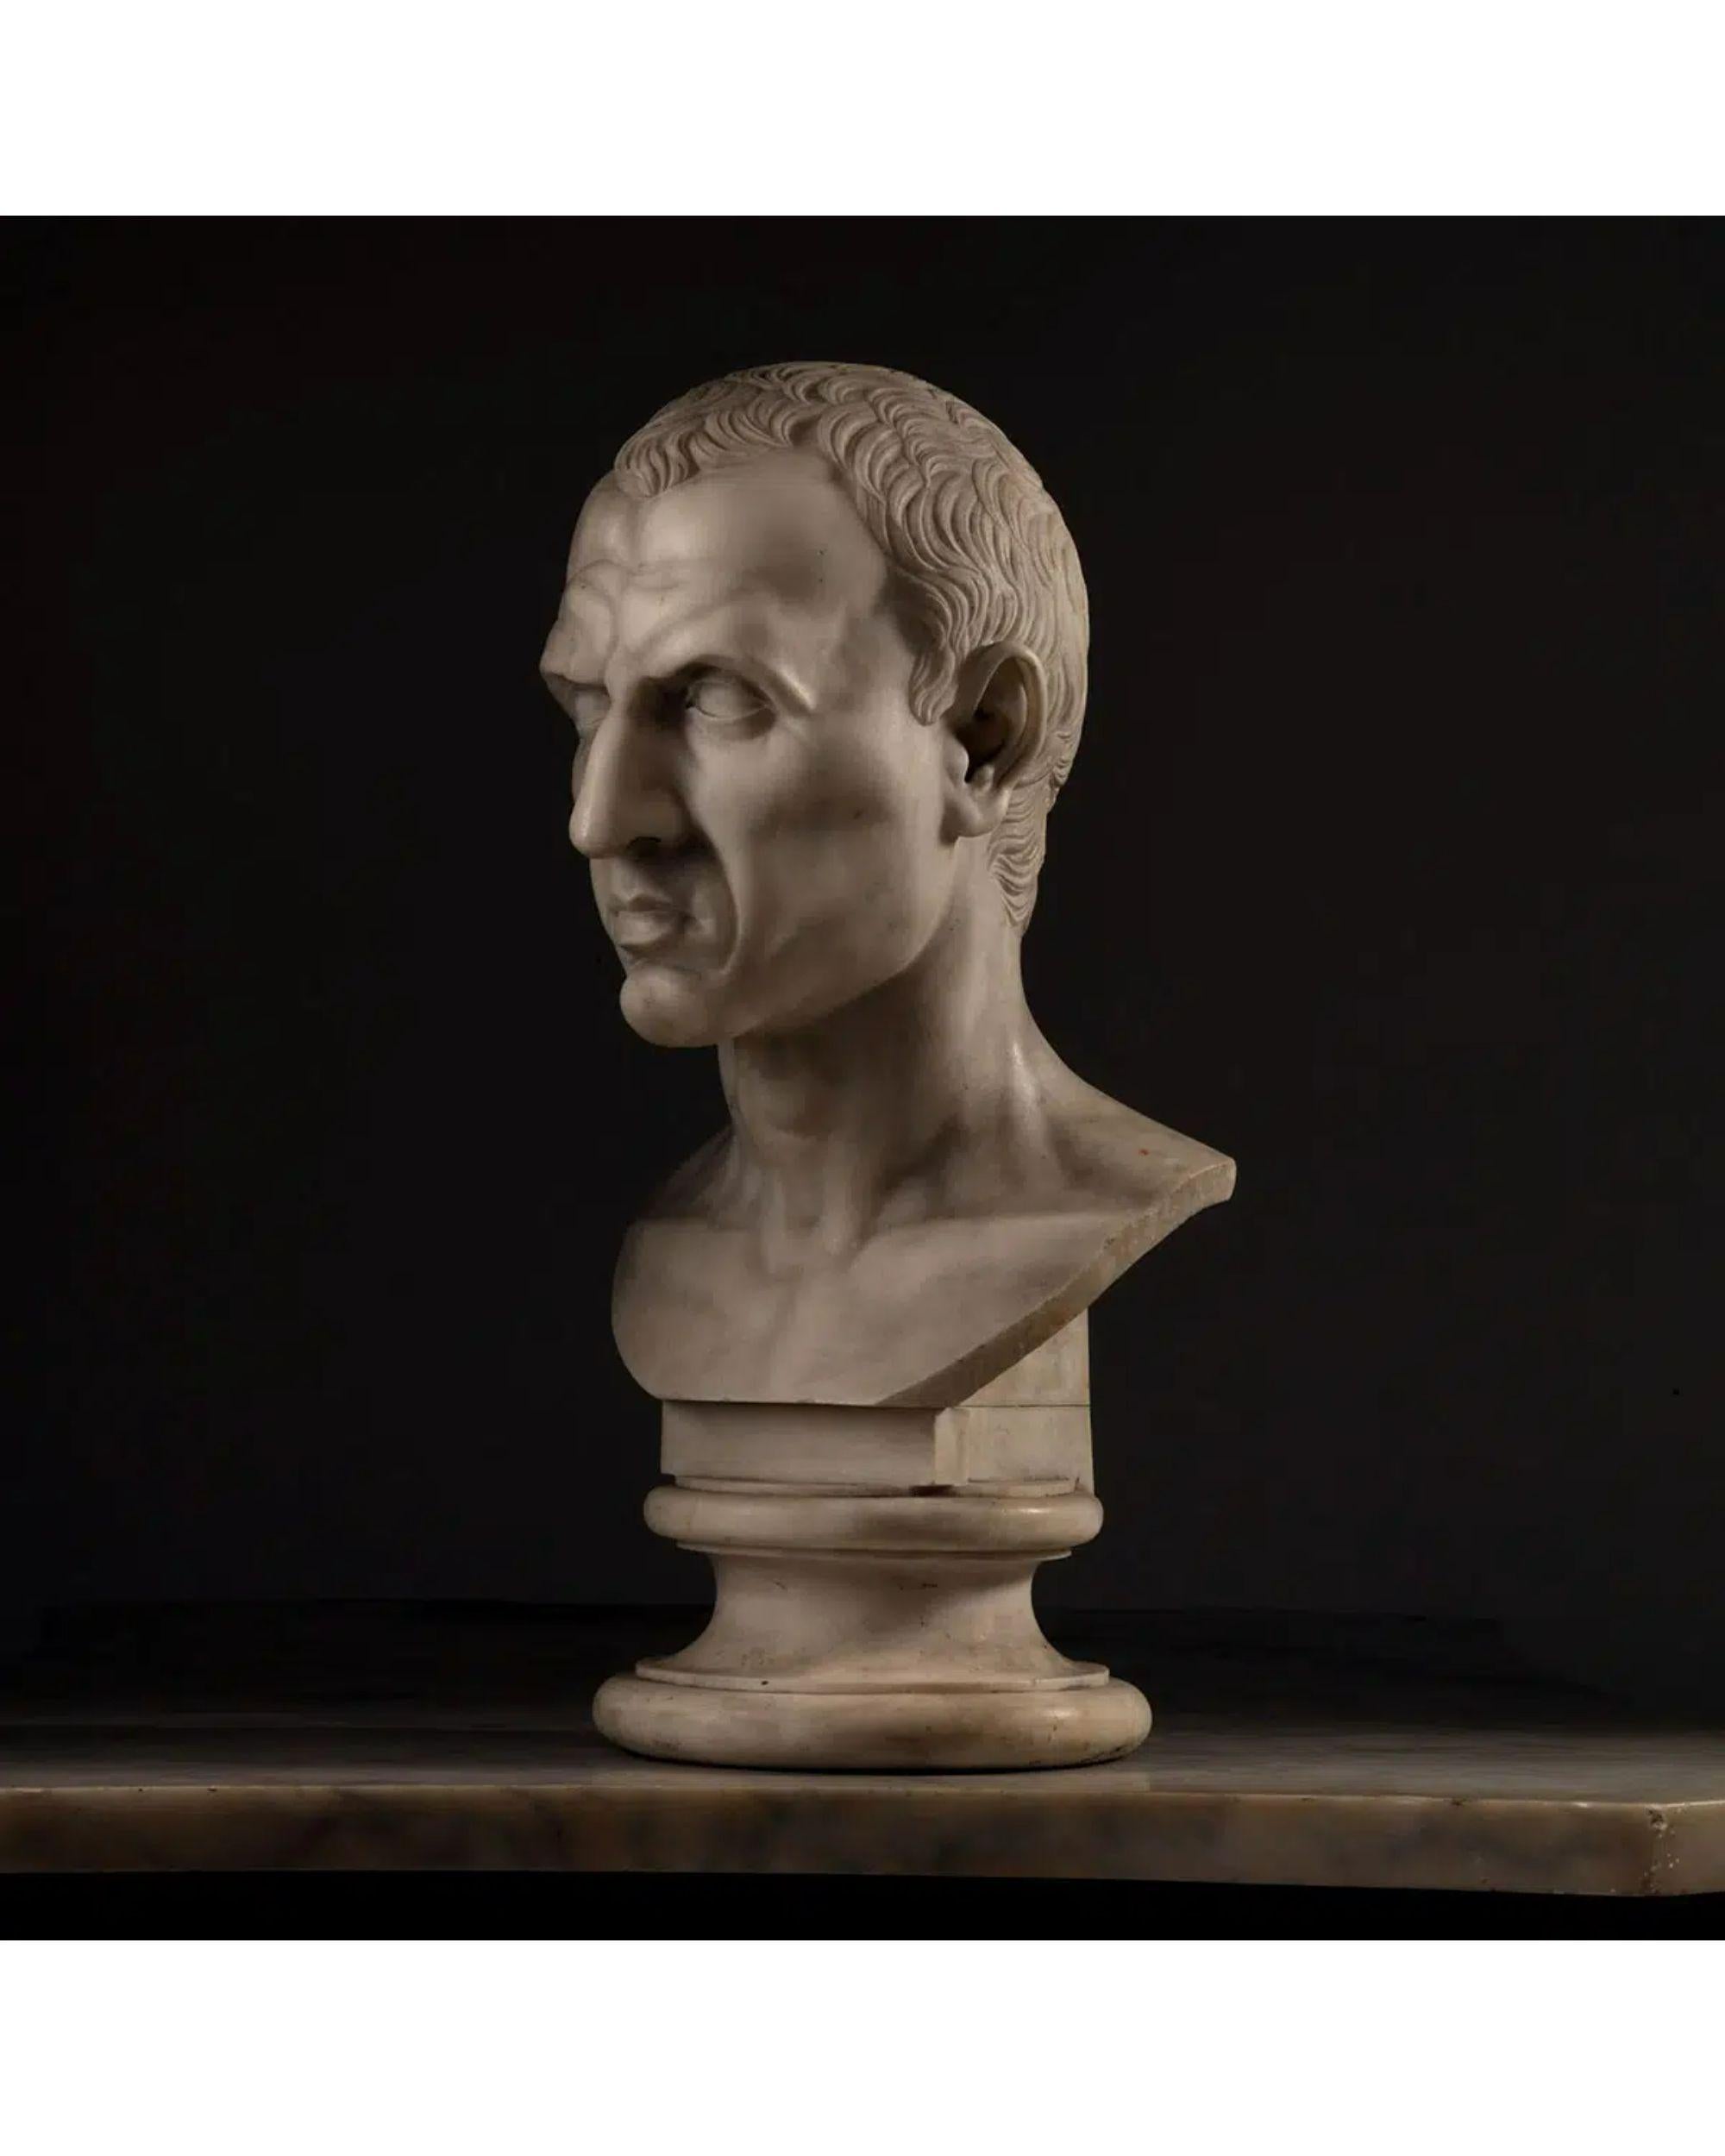 19. Jahrhundert Grand Tour Statuarische Marmorporträtbüste von Julius Caesar 12. Juli 100 v. Chr. - 15. März 44 v. Chr.

Büste von Julius Caesar
Julius Caesar war ein hoch angesehener Staatsmann und Militärgeneral, der maßgeblich an der Gründung des